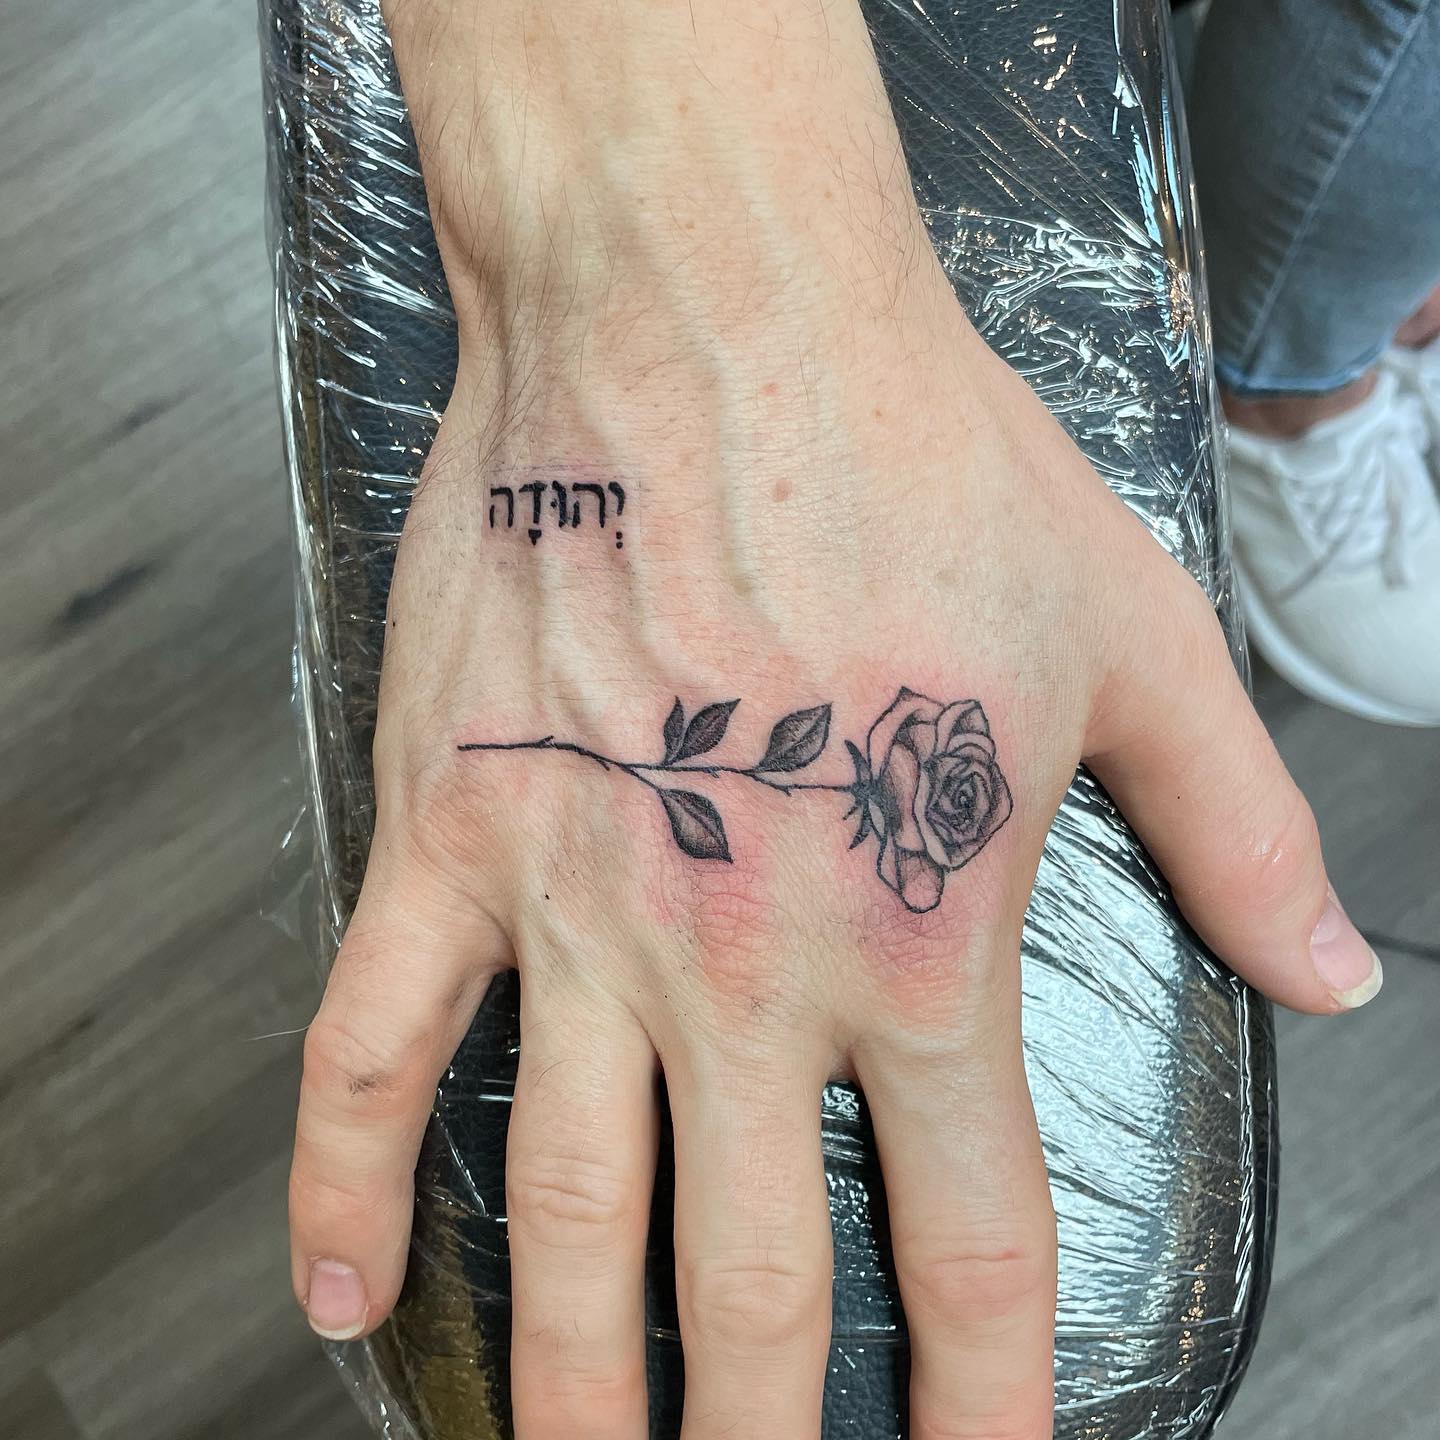 Tatuaje simple de rosa en la mano.